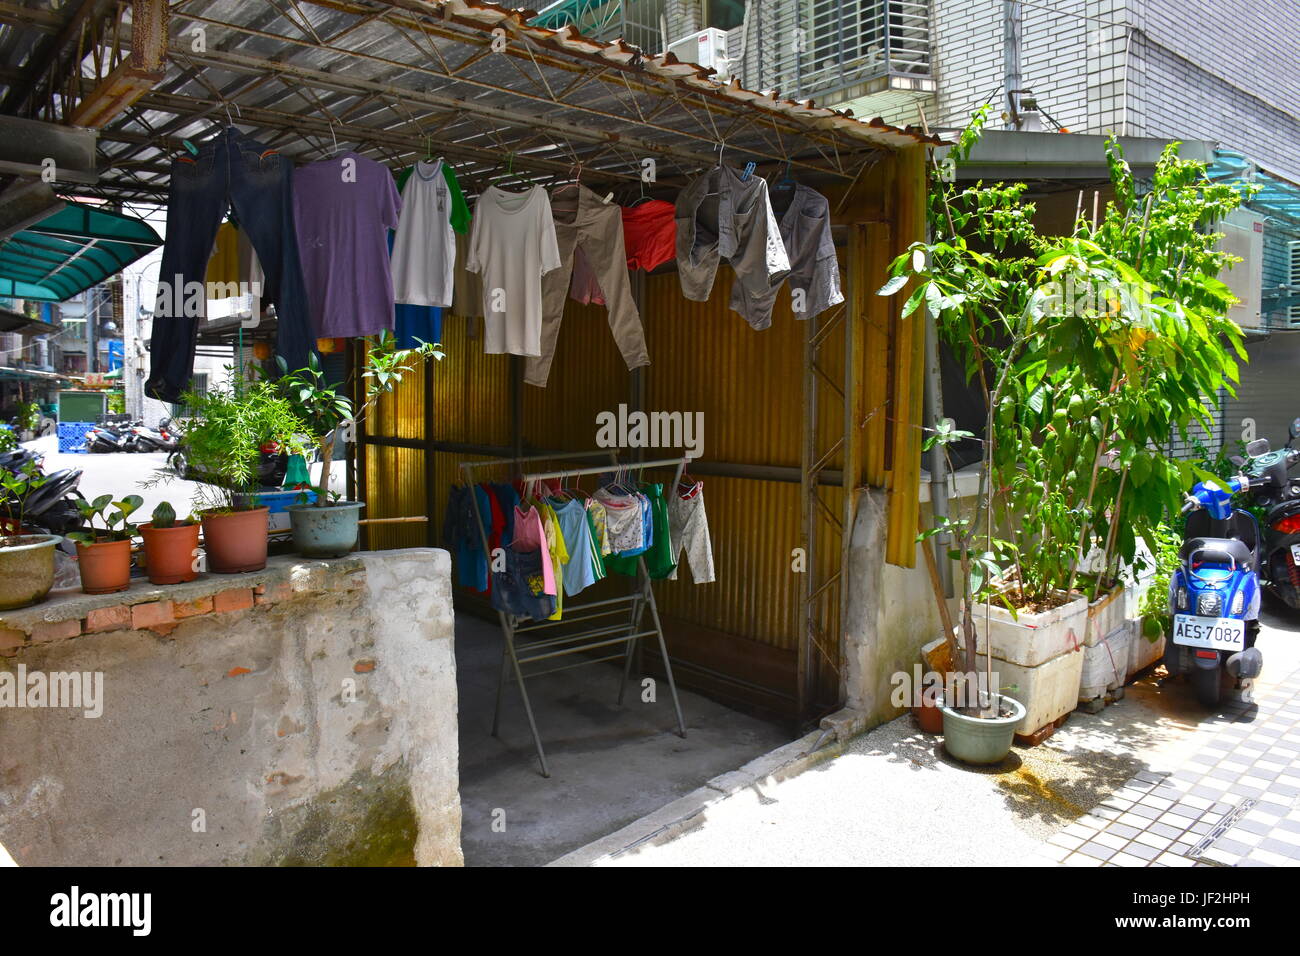 Certains vêtements d'être laissées pour compte après avoir été lavé à la main. Cette vieille manière mode est très populaire à Taiwan pour économiser de l'argent. Banque D'Images